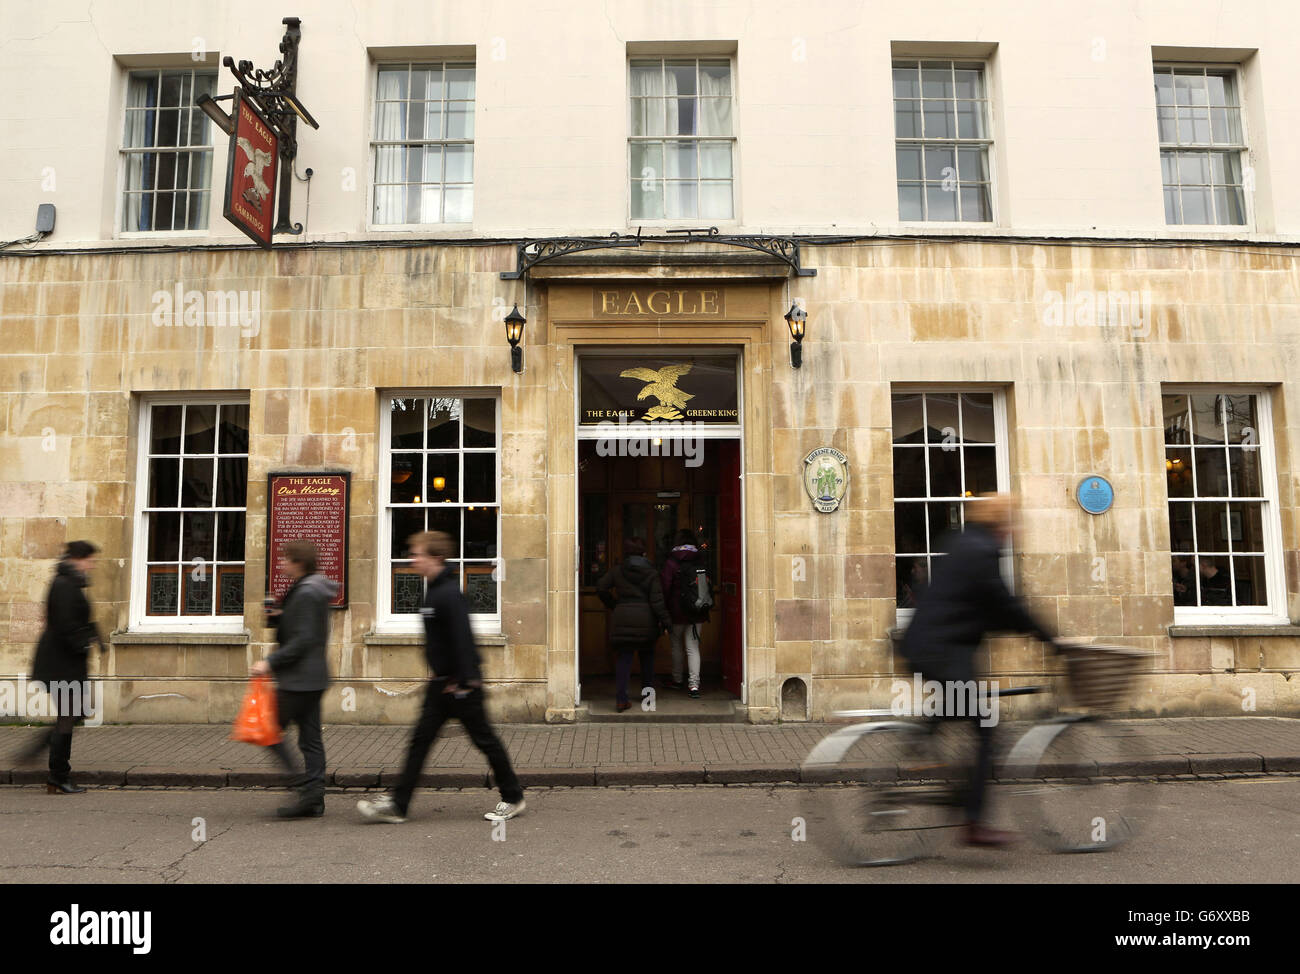 Vista generale del pub Eagle a Cambridge. L'Eagle è una delle più antiche locande di Cambridge, risalente al XIV secolo. Il luogo dove gli scienziati Watson e Crick hanno annunciato al mondo che avevano scoperto il DNA. Foto Stock